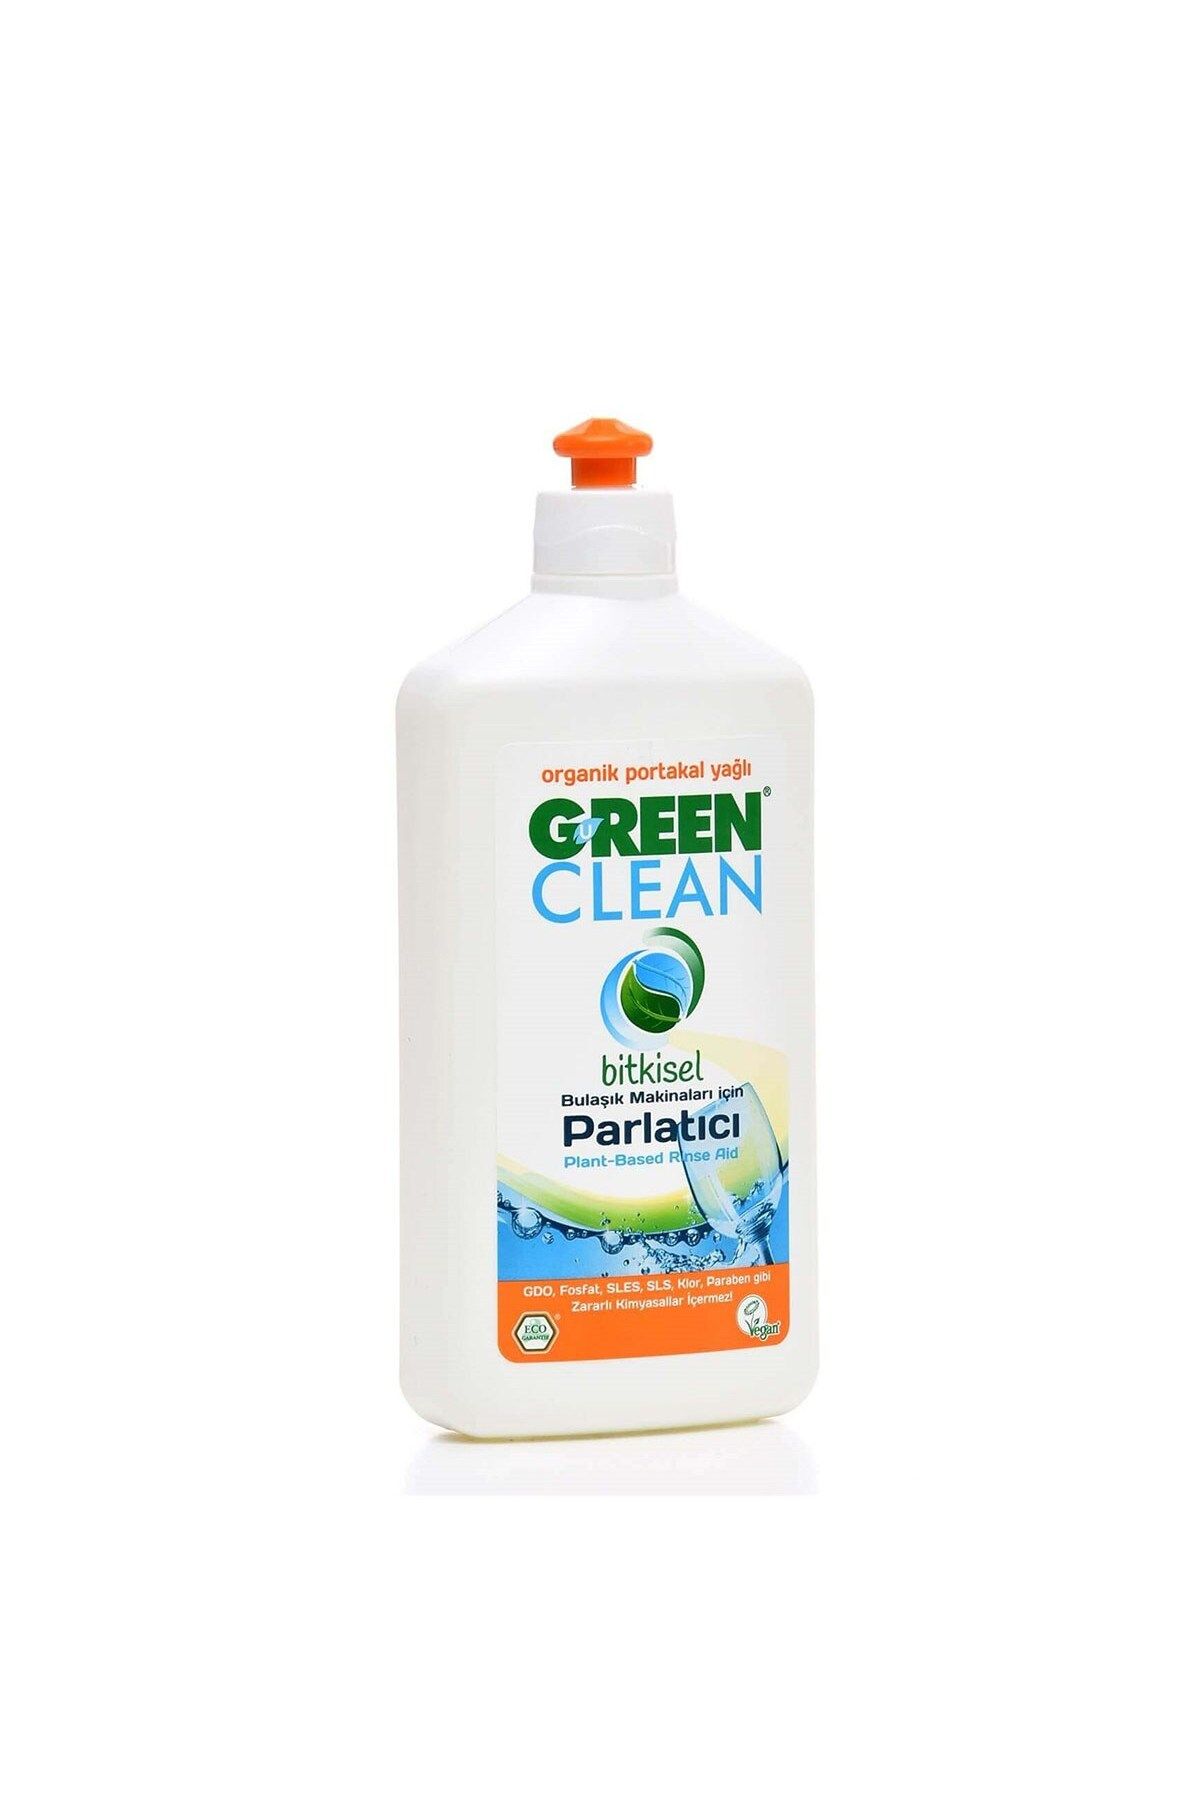 Green Clean Bitkisel Bulaşık Makinesi Parlatıcısı 500ml